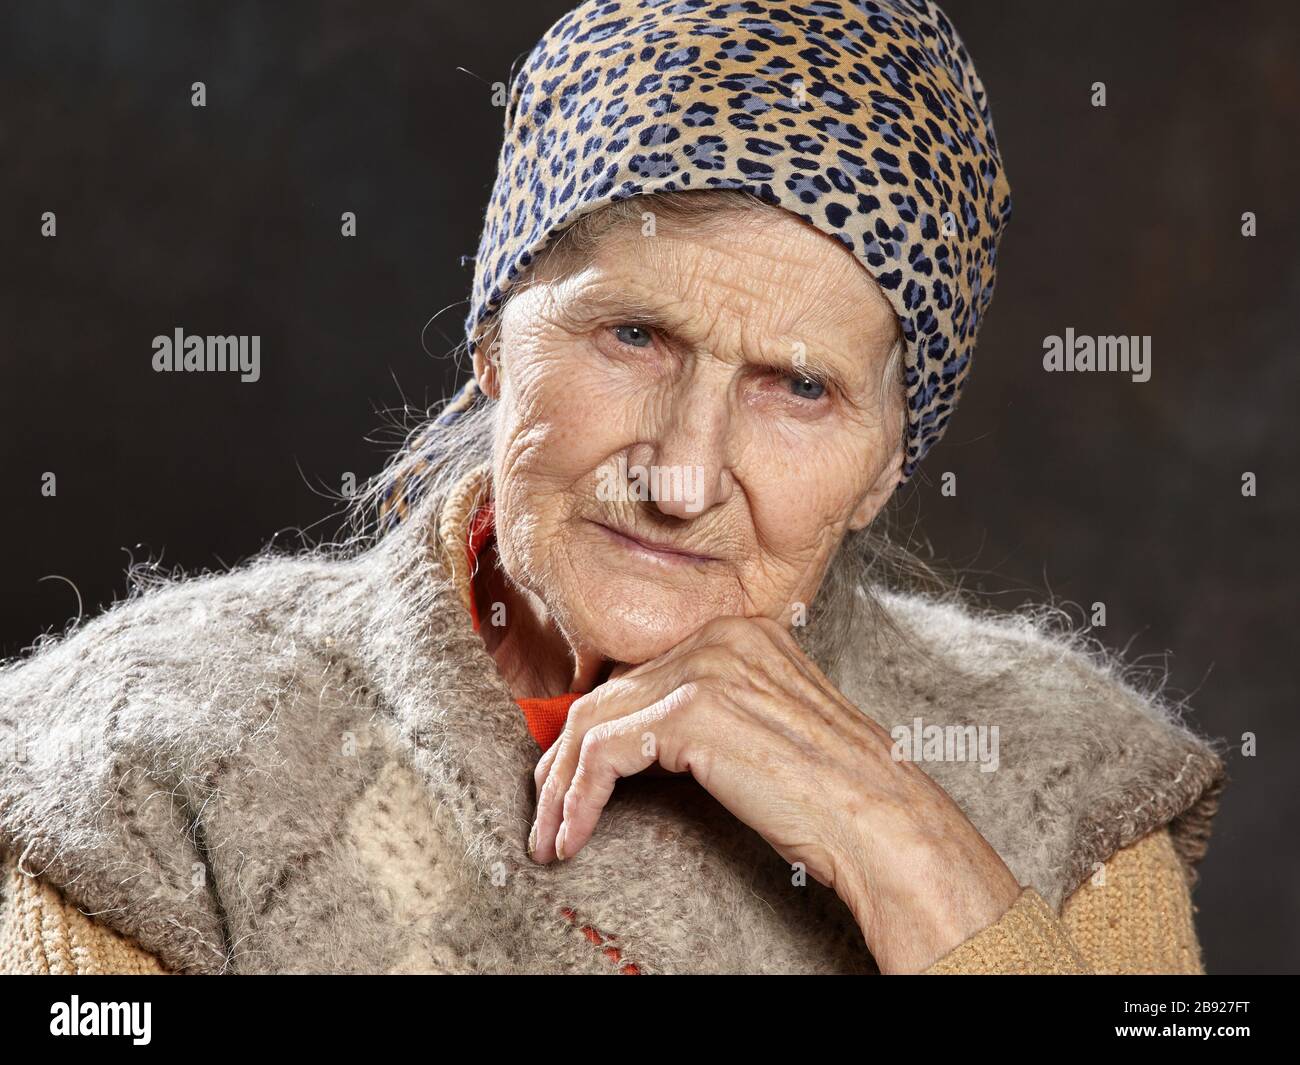 Portrait en gros plan de la vieille femme avec un aspect réfléchi sur un arrière-plan sombre.Les personnes de cet âge sont les plus vulnérables durant les épidémies. Banque D'Images